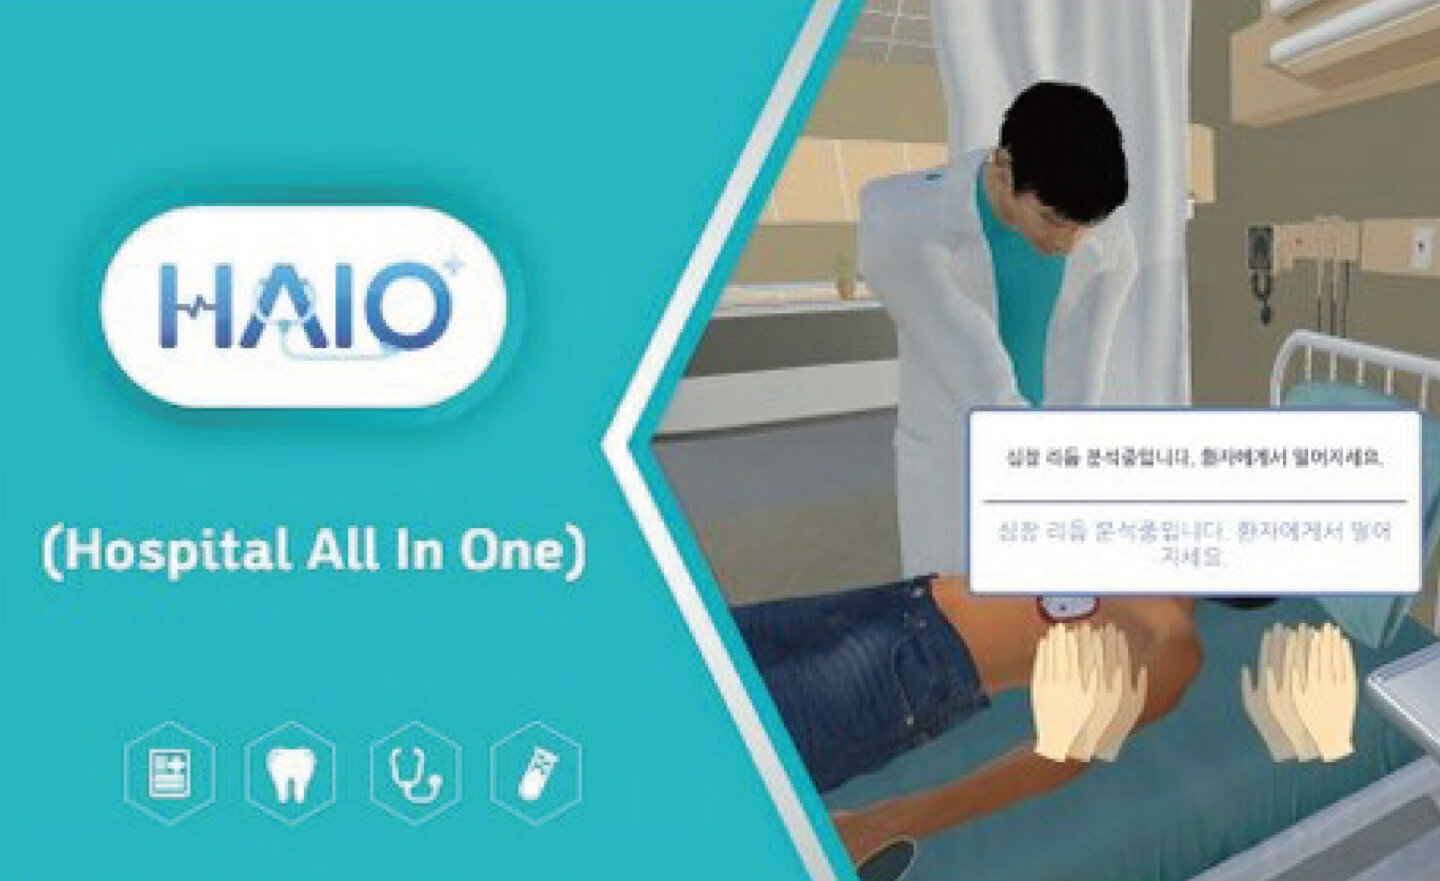 Dain Leaders 利用 VR 技術開發一站式醫院 HAIO，打造虛擬急診室